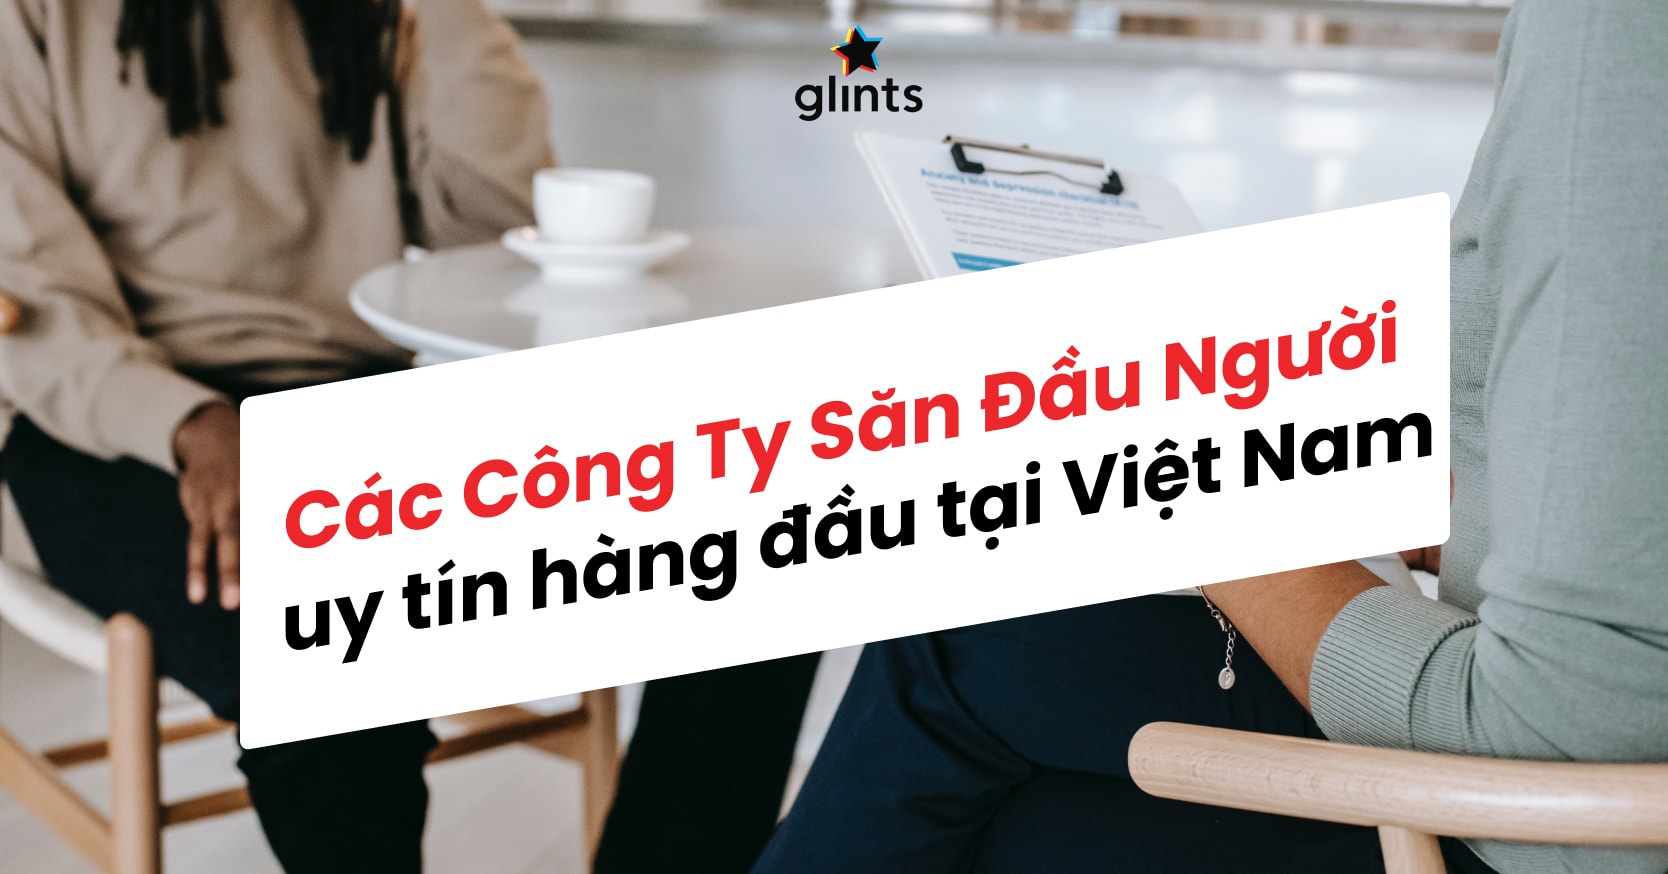 Top 10 Các Công Ty Săn Đầu Người Hàng Đầu Tại Việt Nam